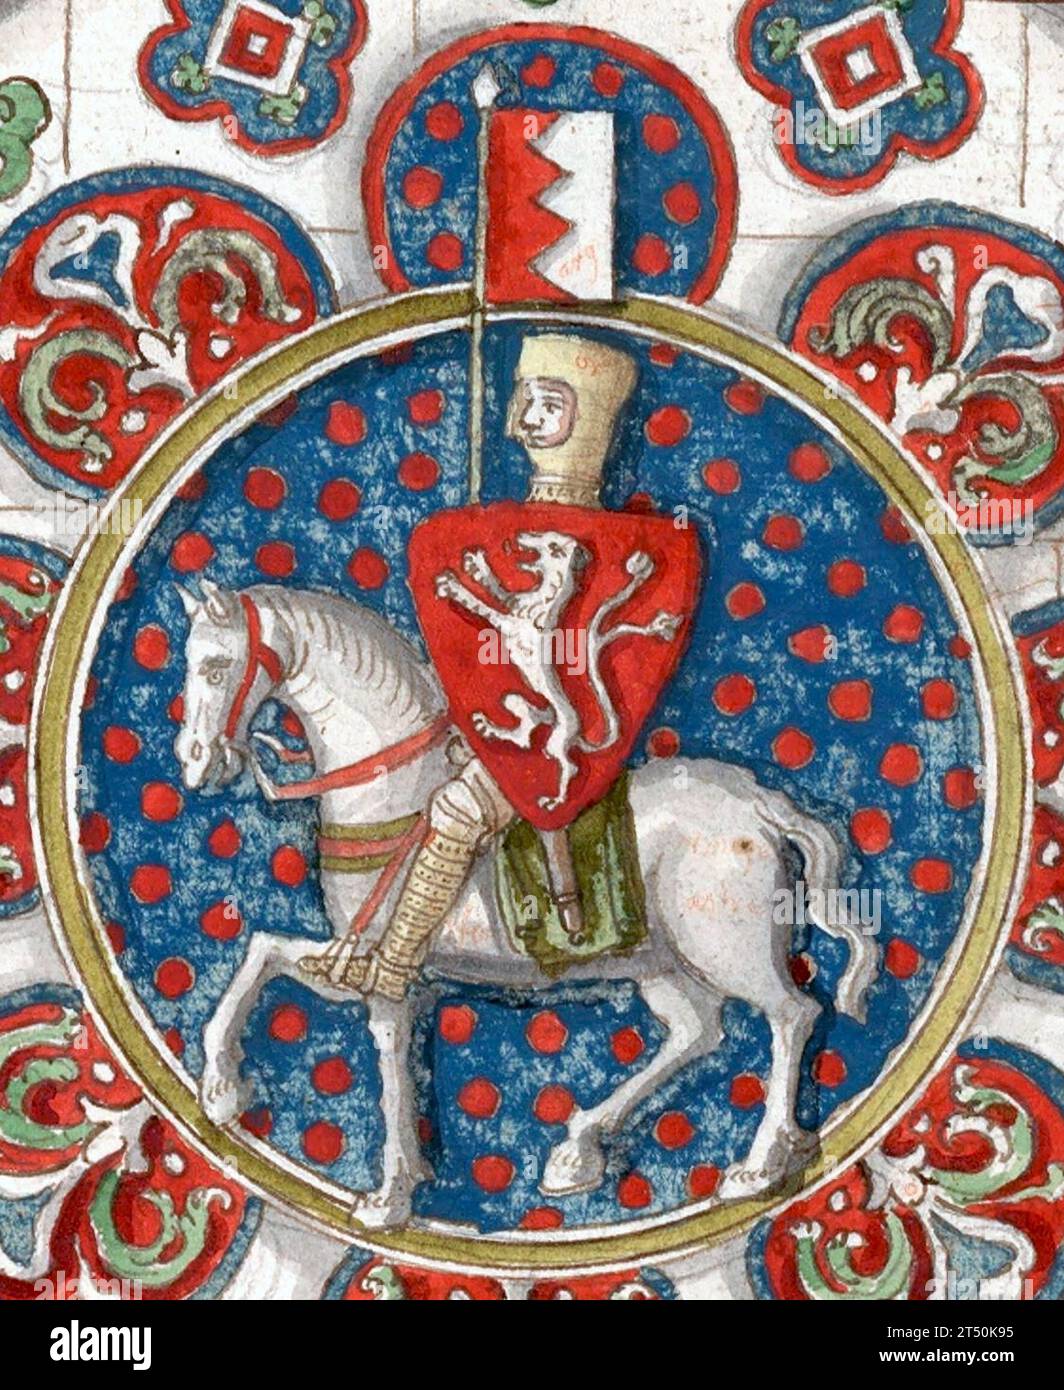 Simon de Montfort, vi conte di Leicester (1208 circa – 4 agosto 1265). De Montfort era un nobile di origine normanna francese e un membro della parìa inglese, che guidò l'opposizione baronale al governo di Enrico III d'Inghilterra, culminando nella seconda guerra dei baroni. Disegno di una vetrata colorata trovata nella Cattedrale di Chartres, 1250 circa Foto Stock